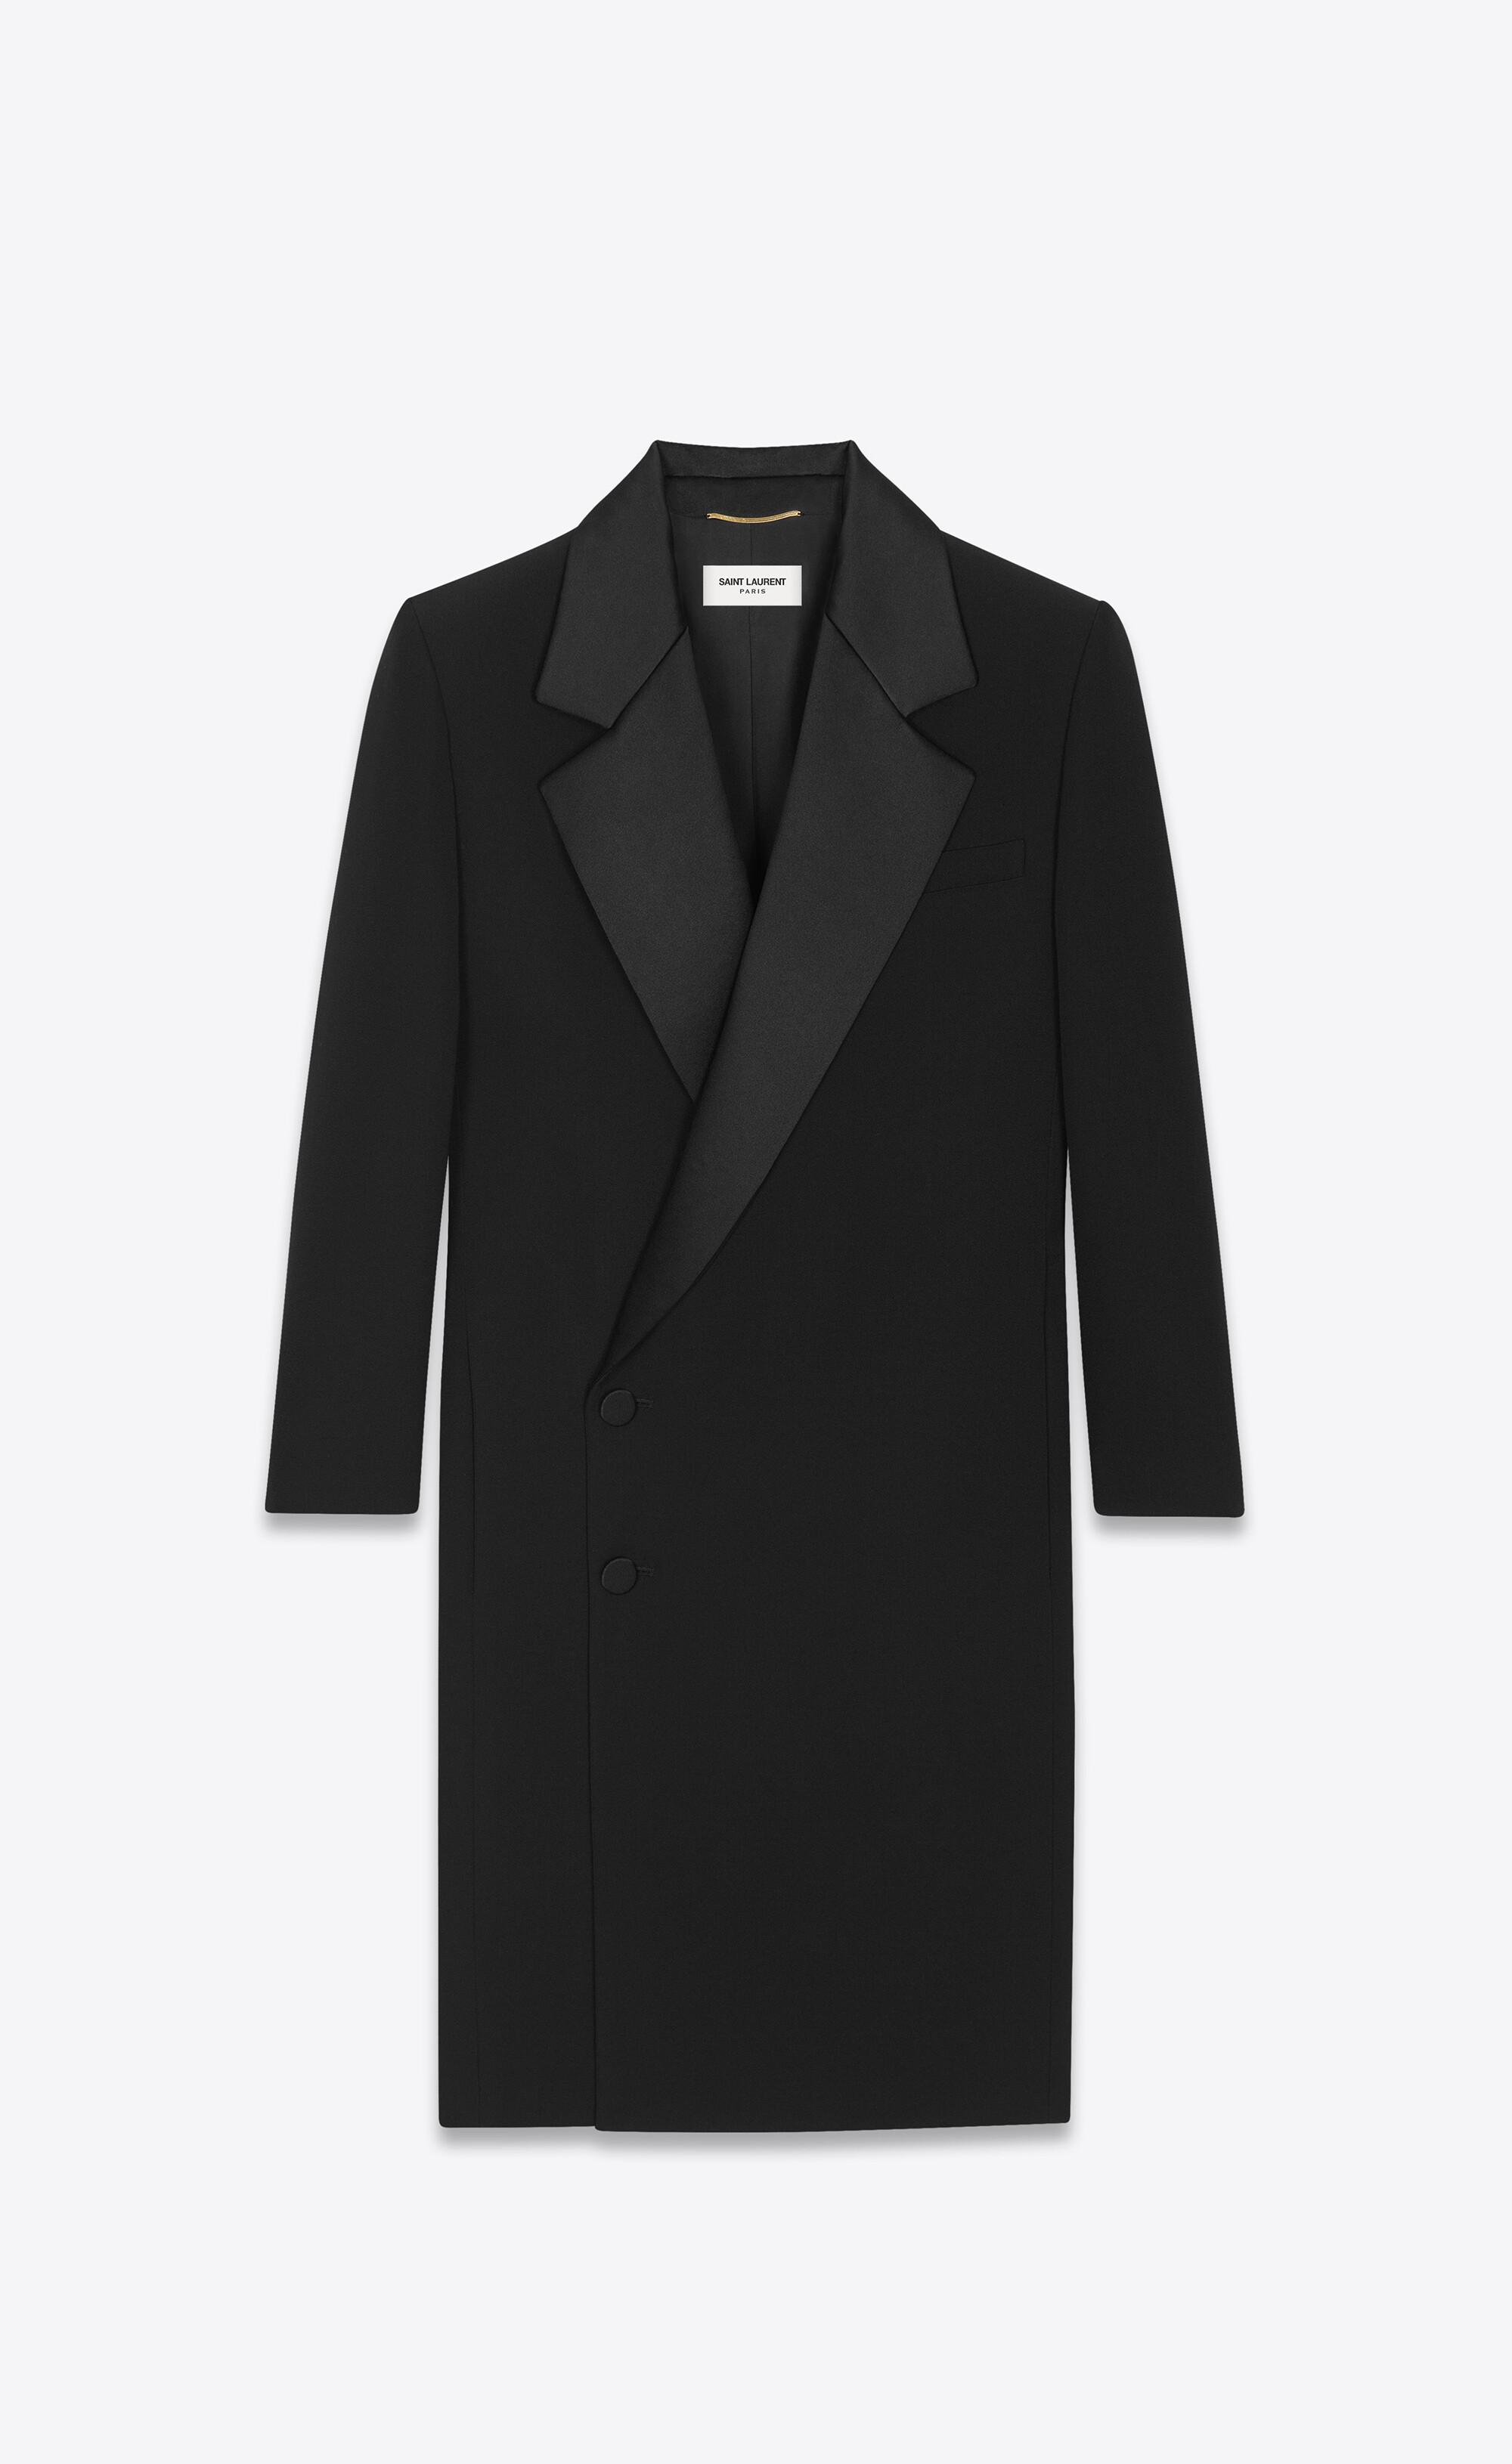 Saint Laurent Tuxedo Dress In Grain De Poudre in Black | Lyst